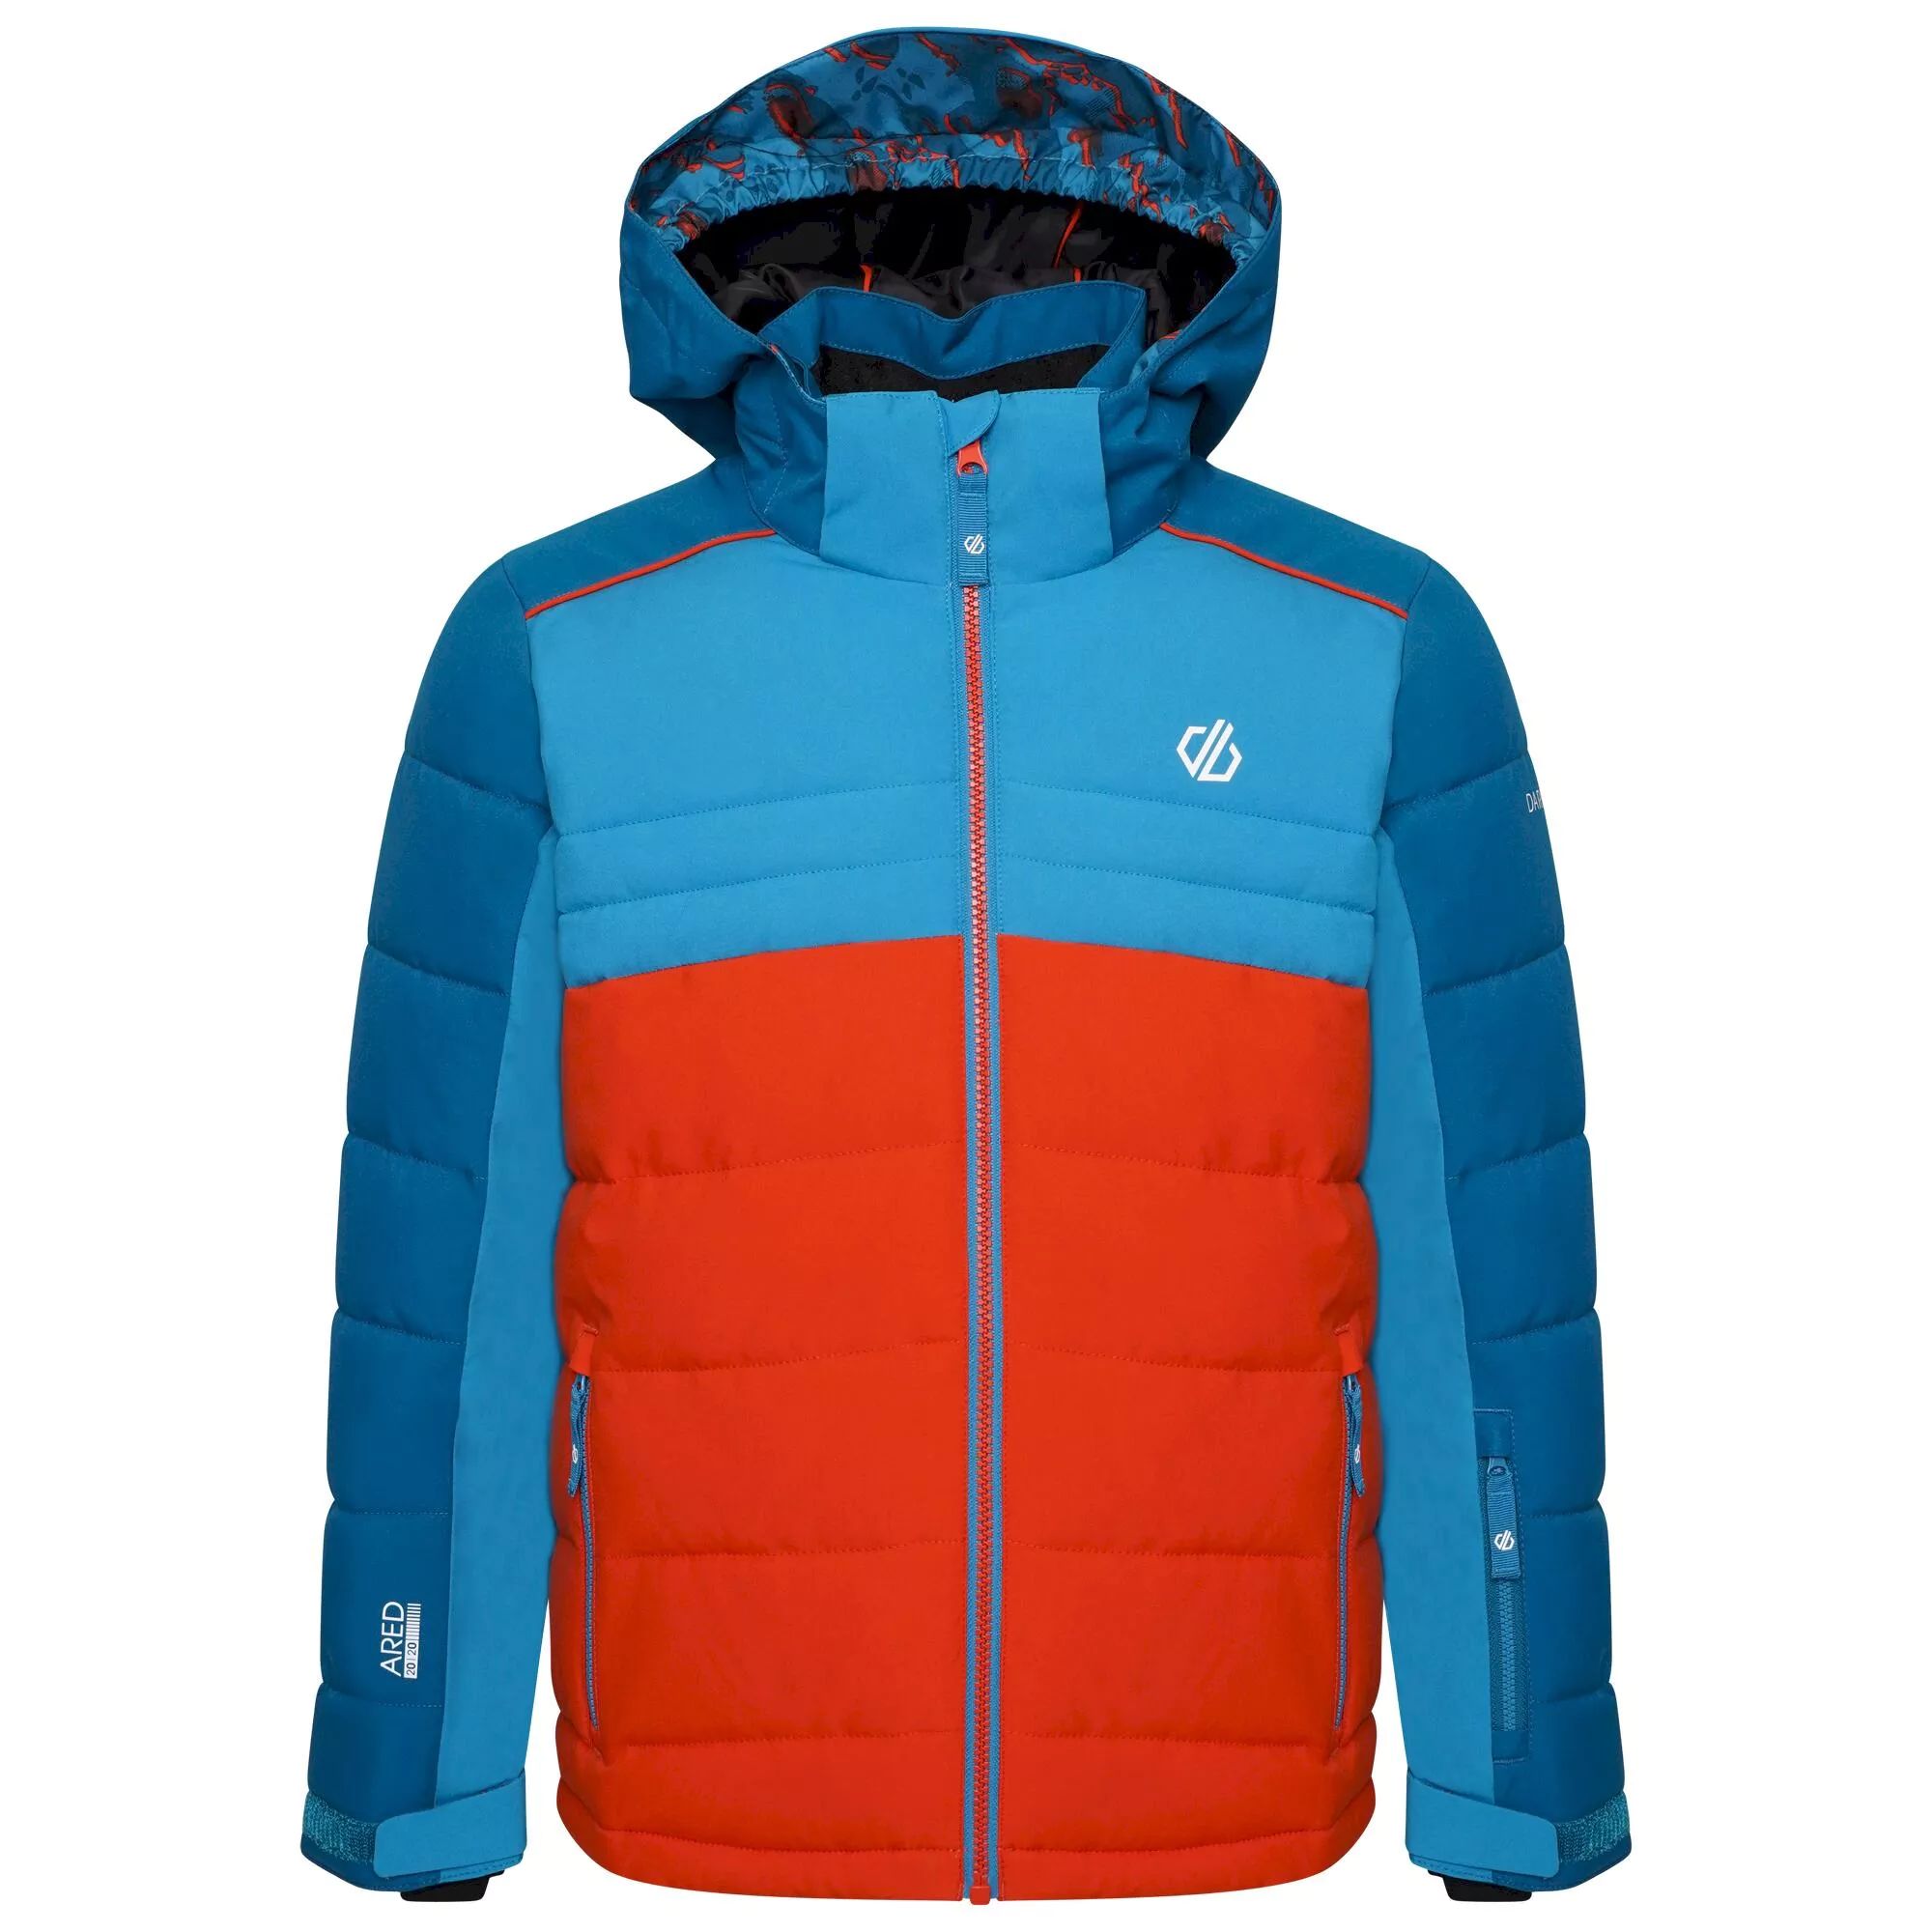  Ski & Snow Jackets -  dare 2b Cheerful II Ski Jacket